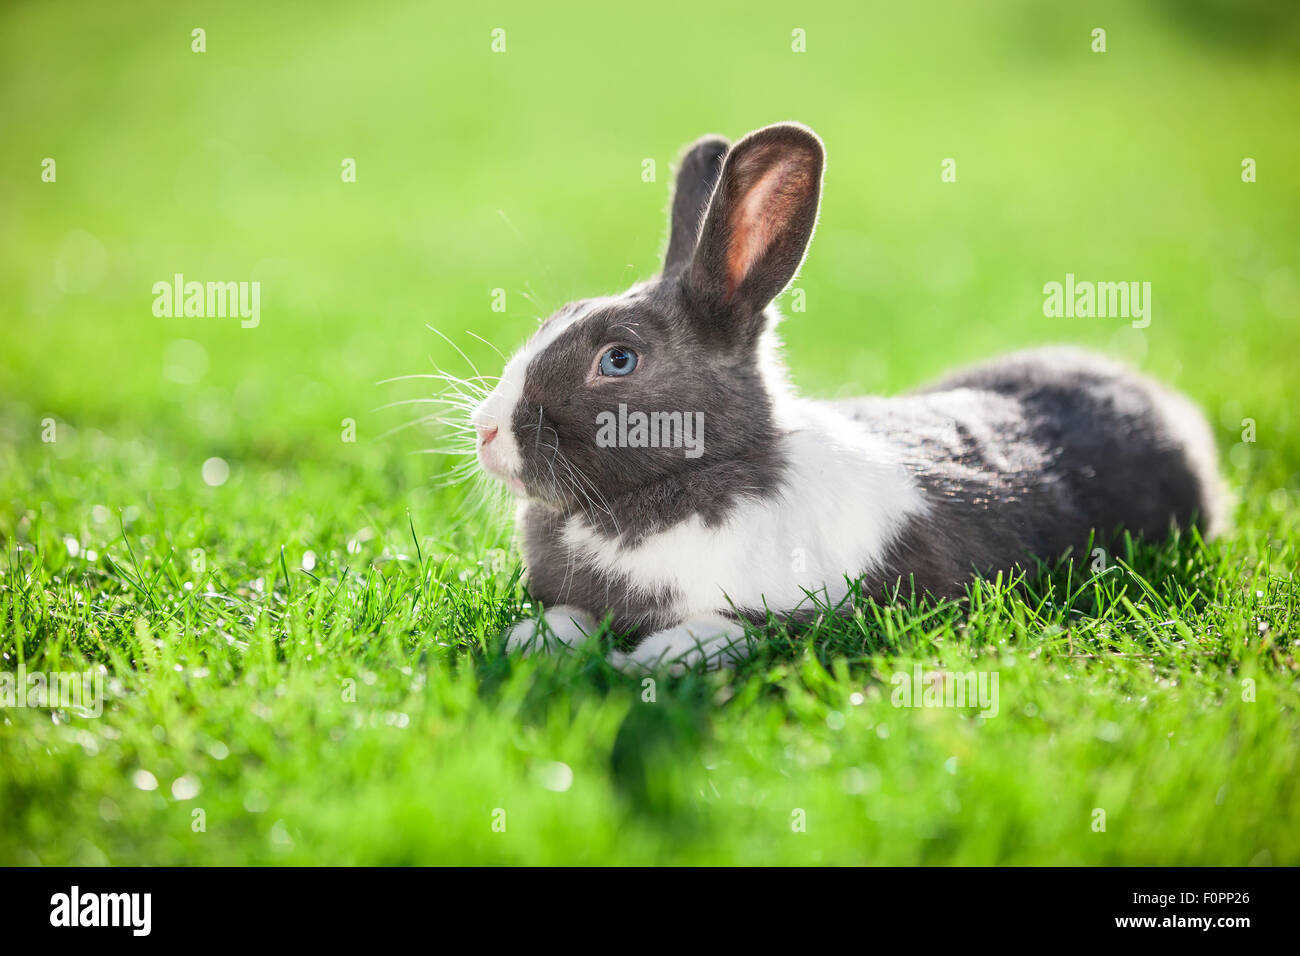 Mascota conejo en pasto verde Foto de stock